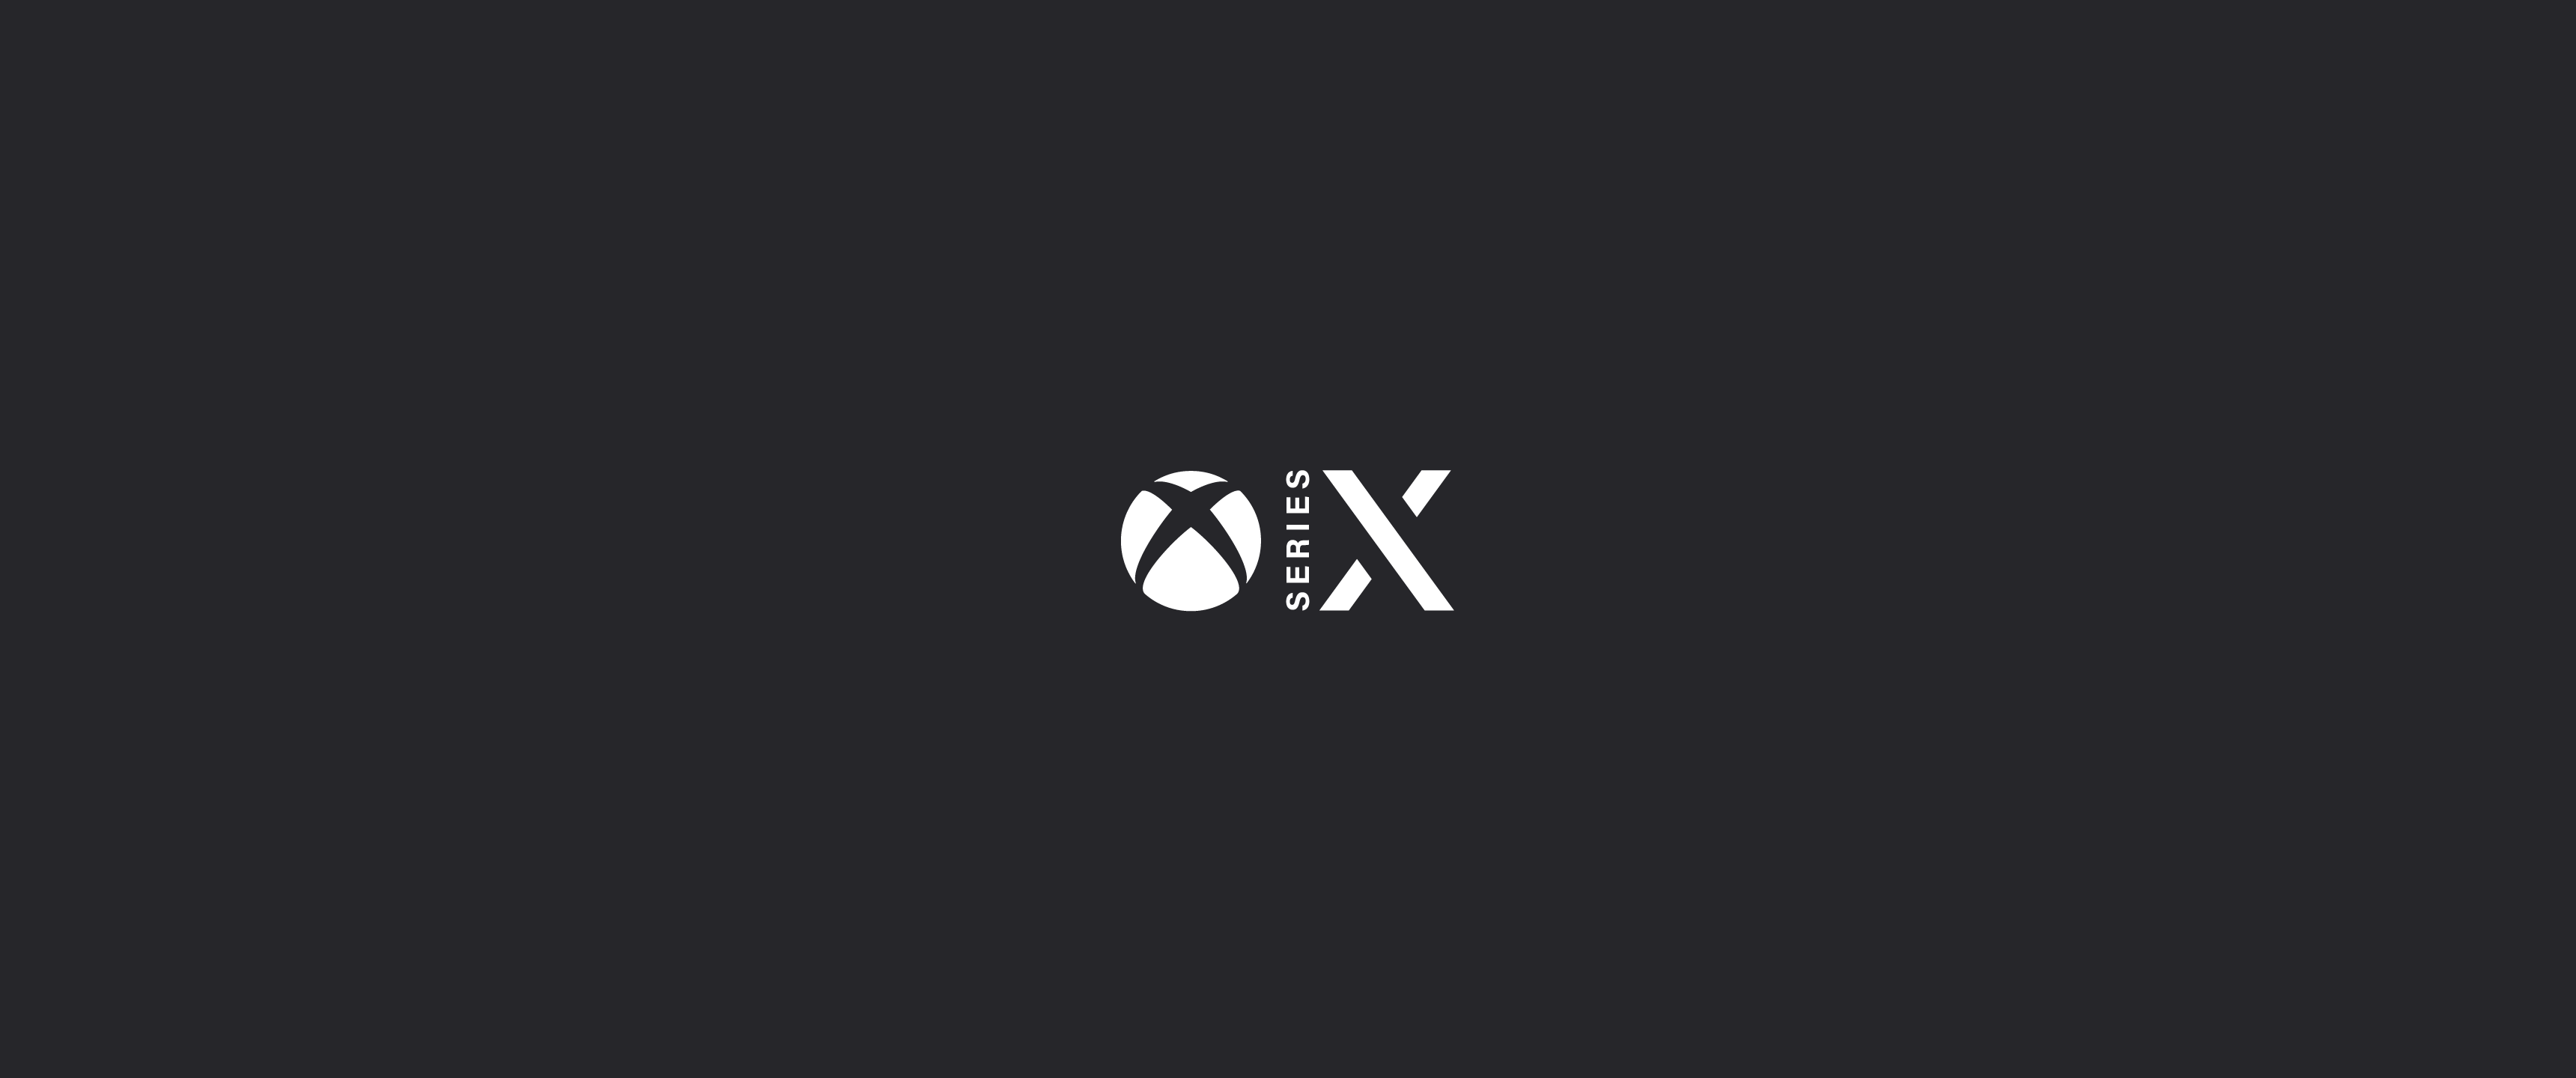 General 3440x1440 Xbox logo Xbox Serie X